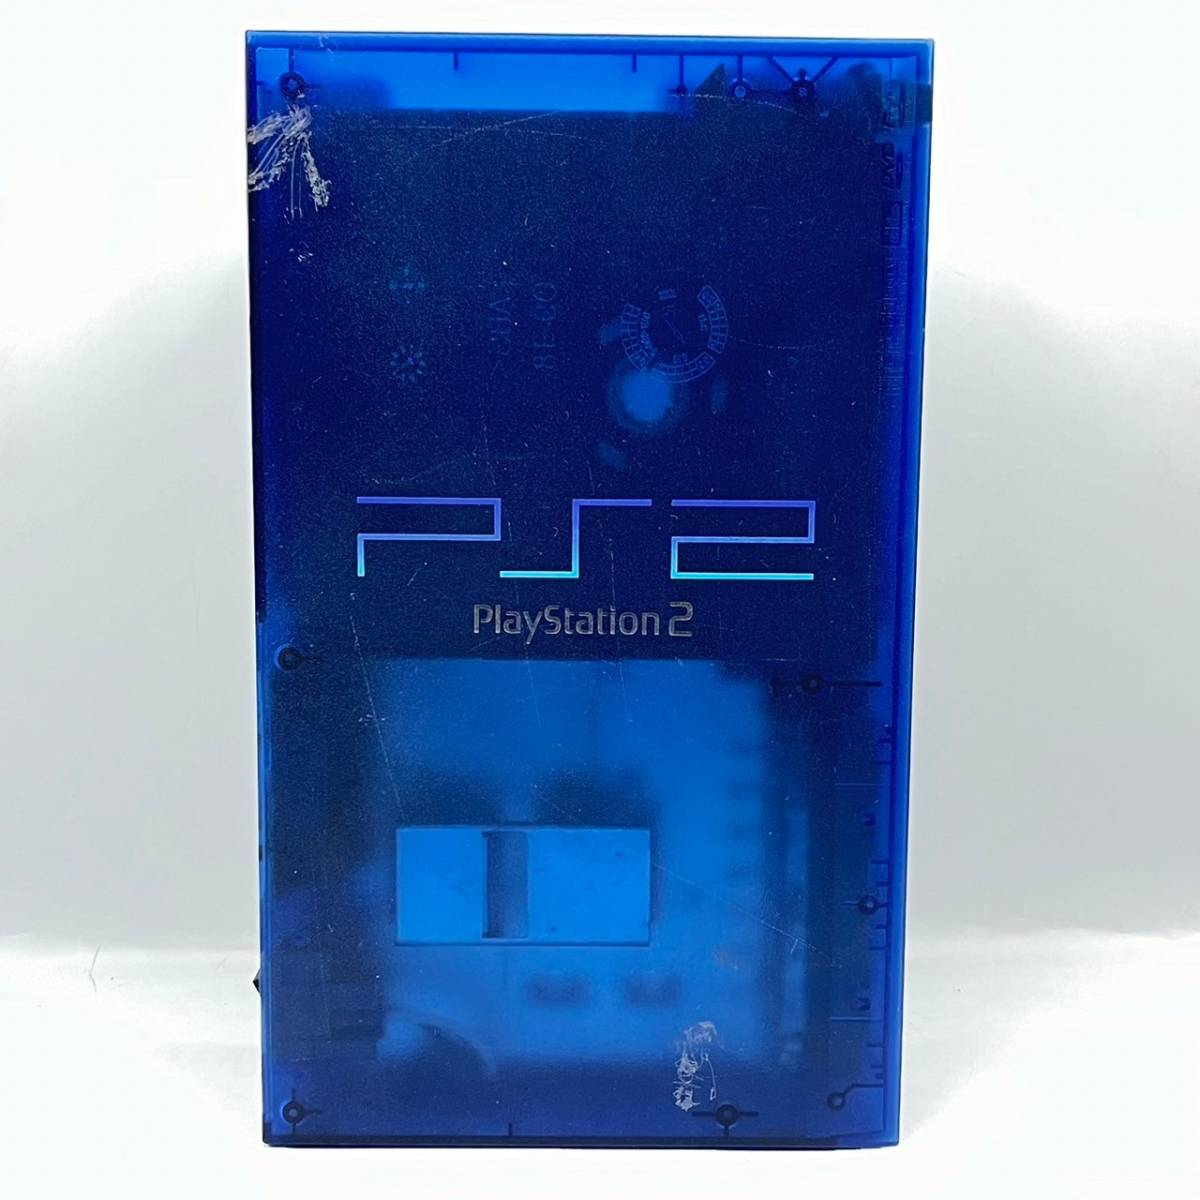 BAd029R 80 限定カラー PS2 SONY PlayStation2 SCPH-37000 L オーシャンブルー コントローラー HORI クリアブルー_画像2